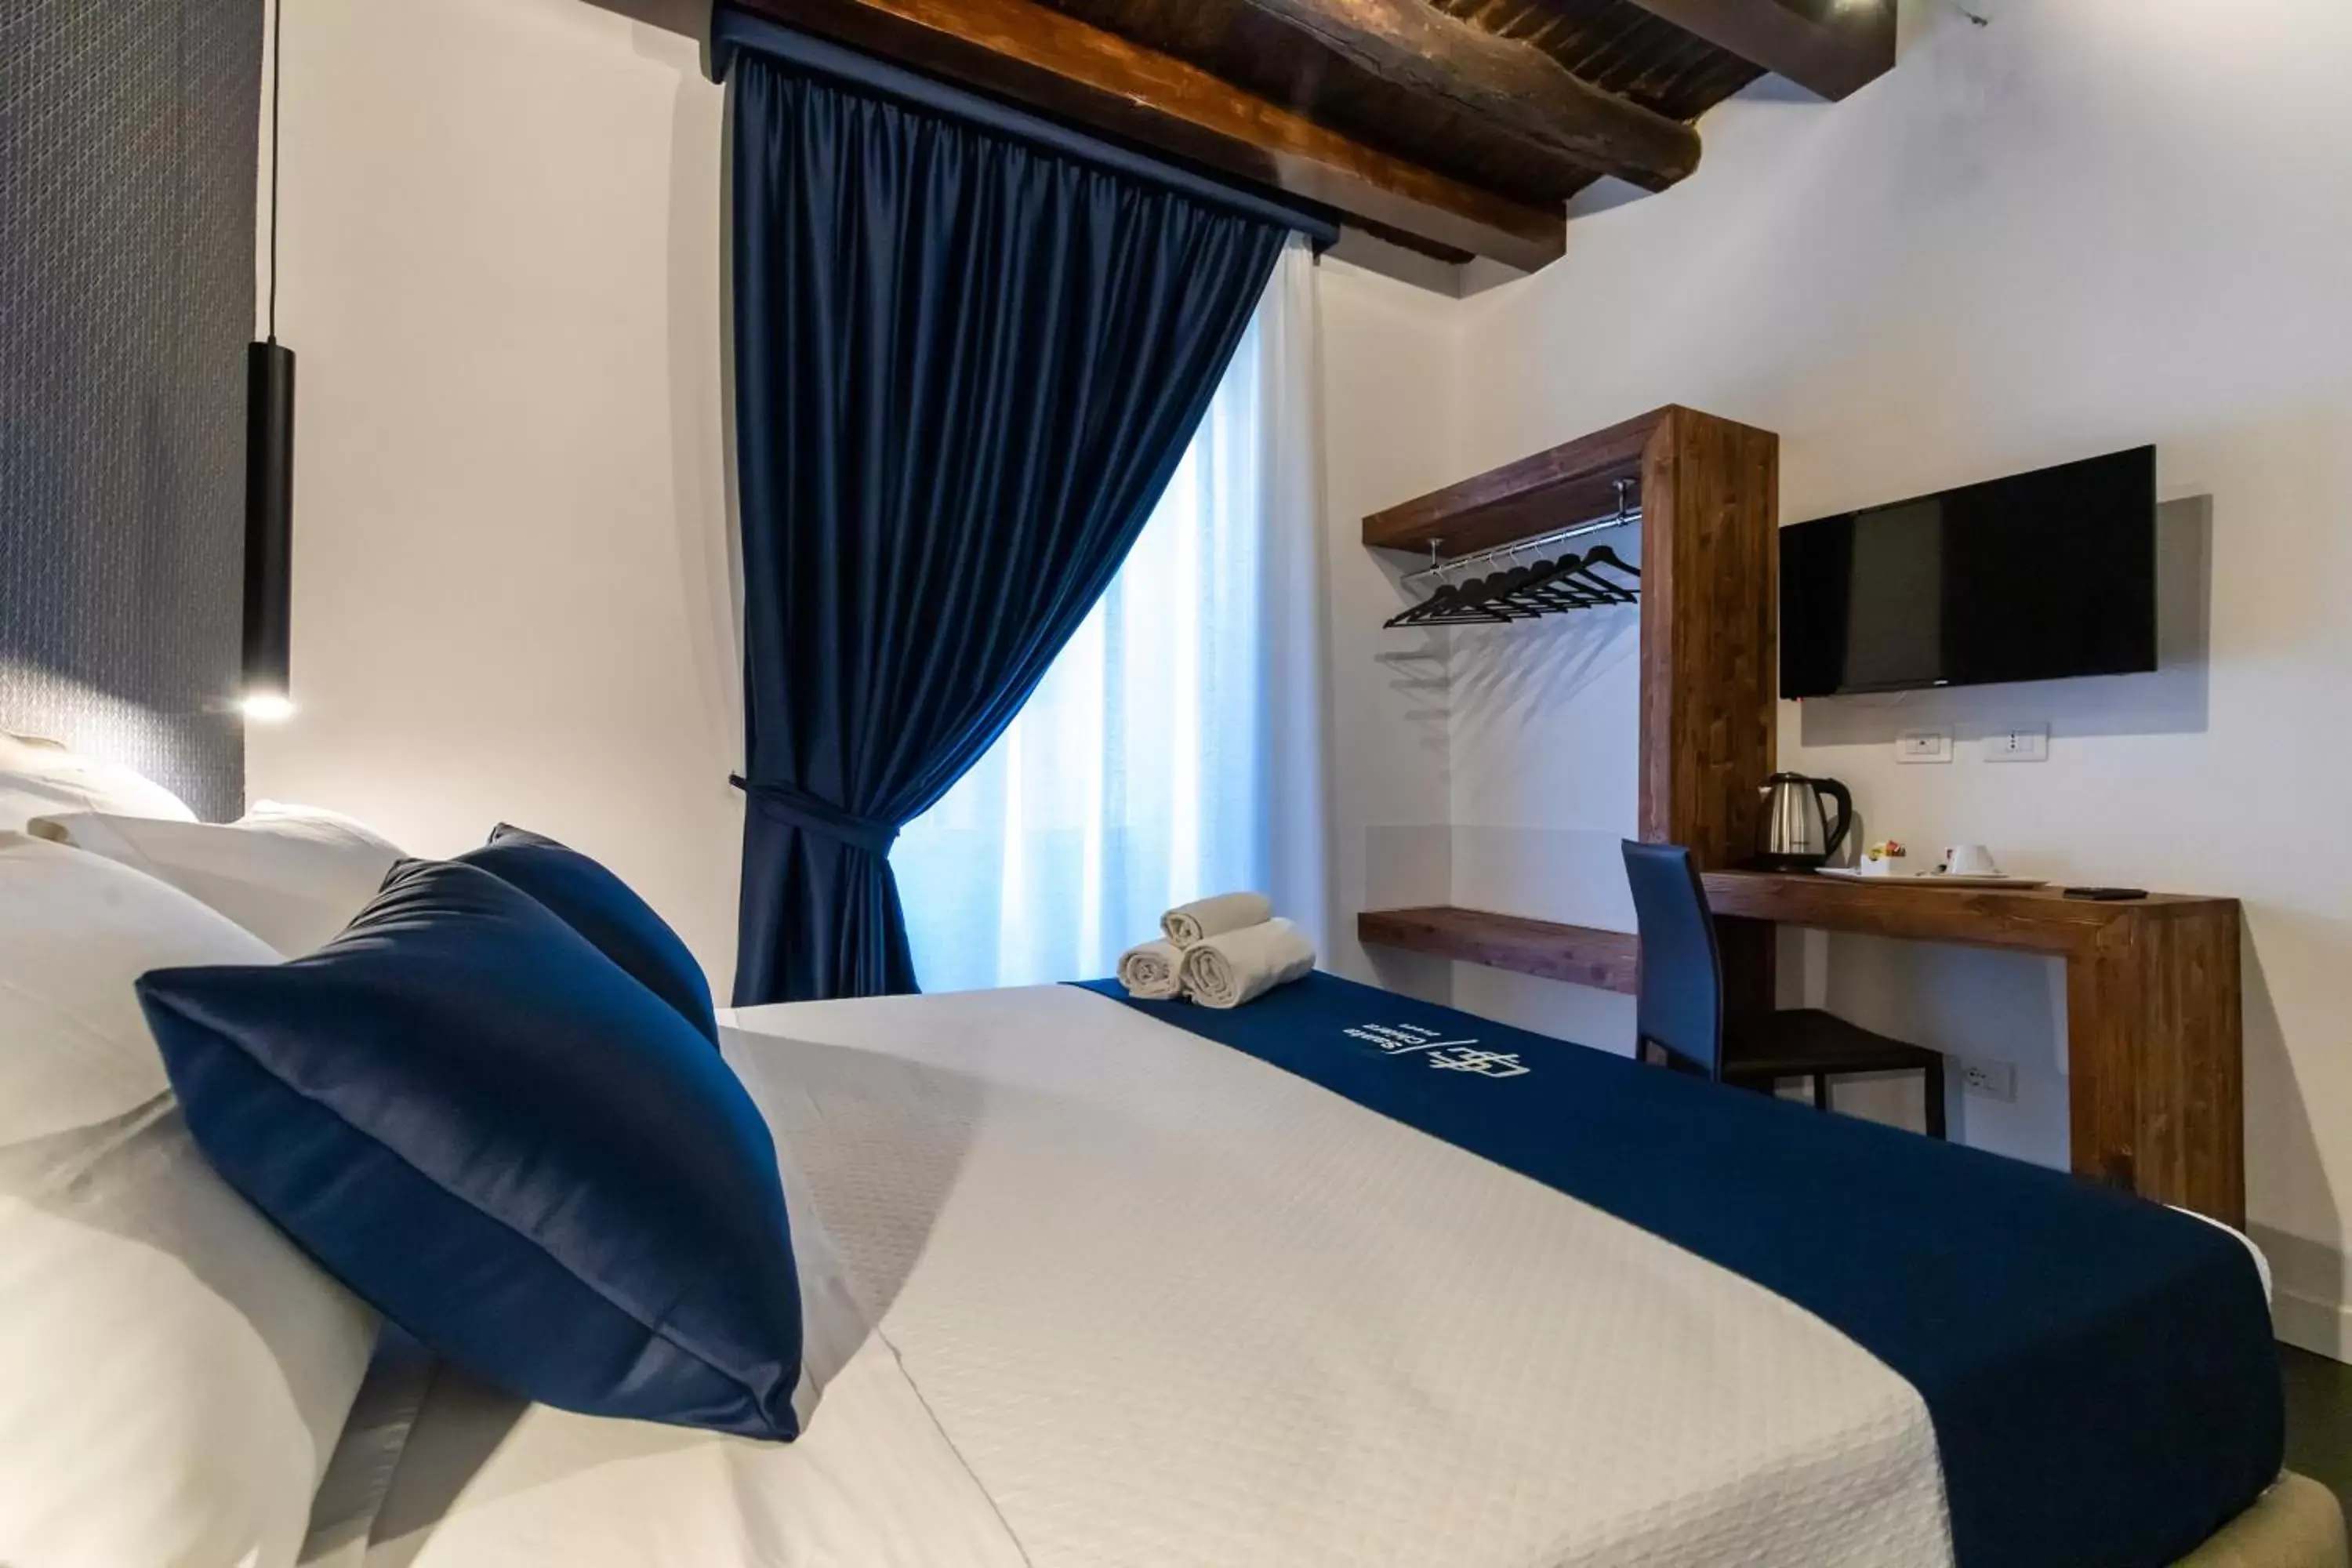 Other, Bed in Santa Chiara Inn